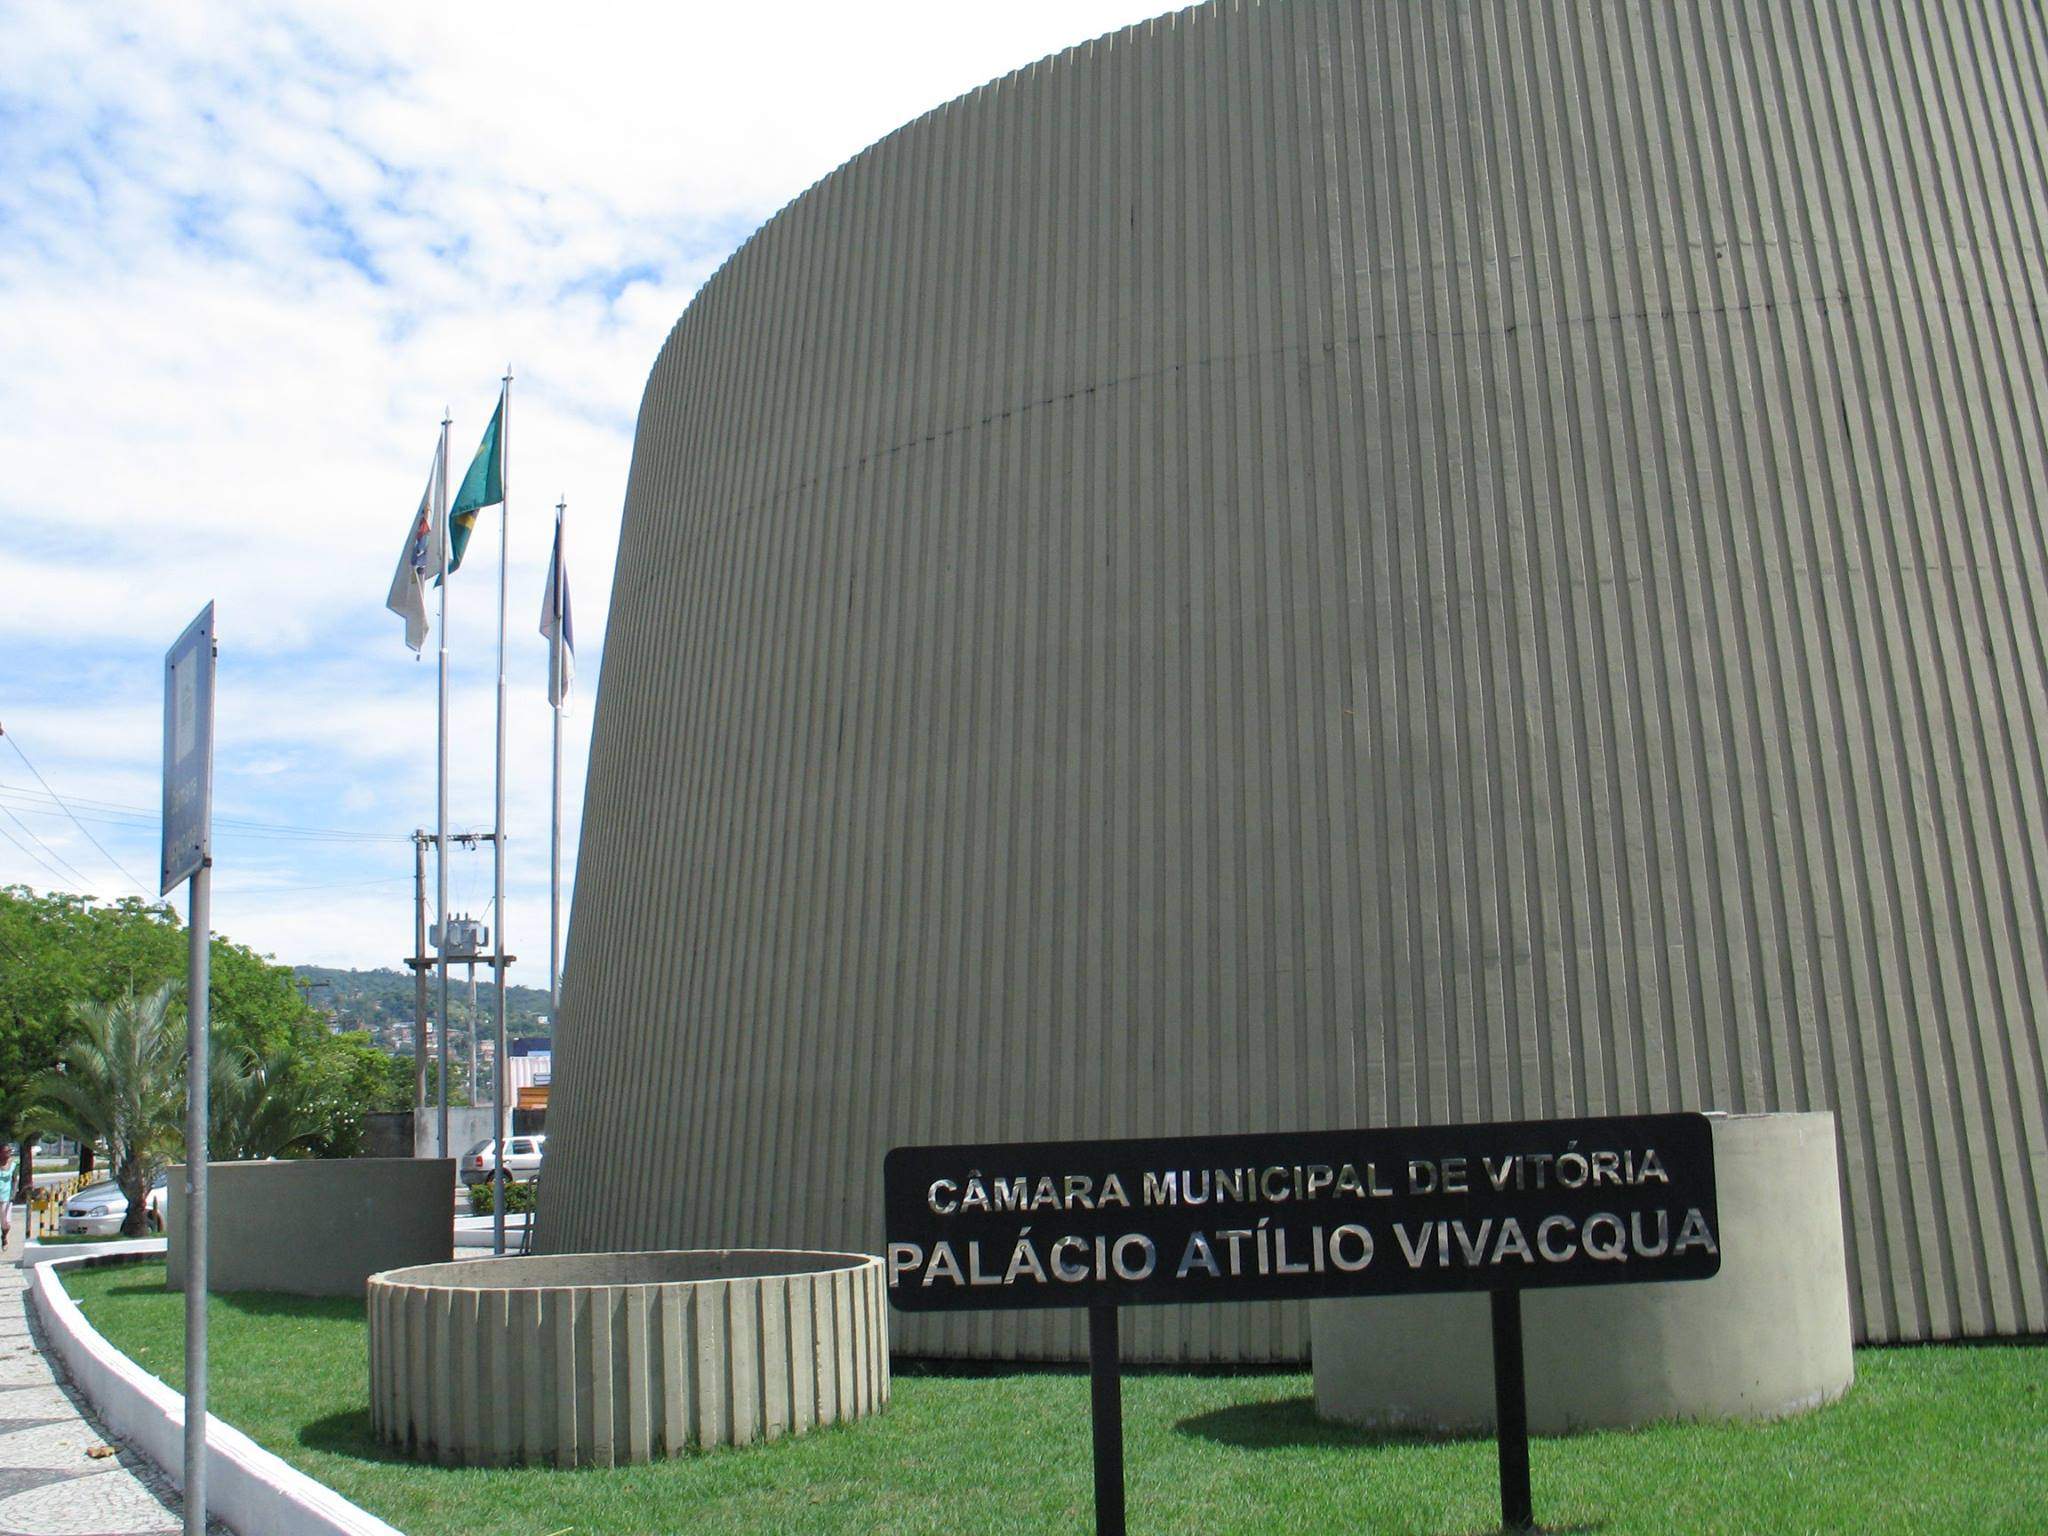 Orçamento de R$ 35 milhões é apresentado para a Câmara de Vitória